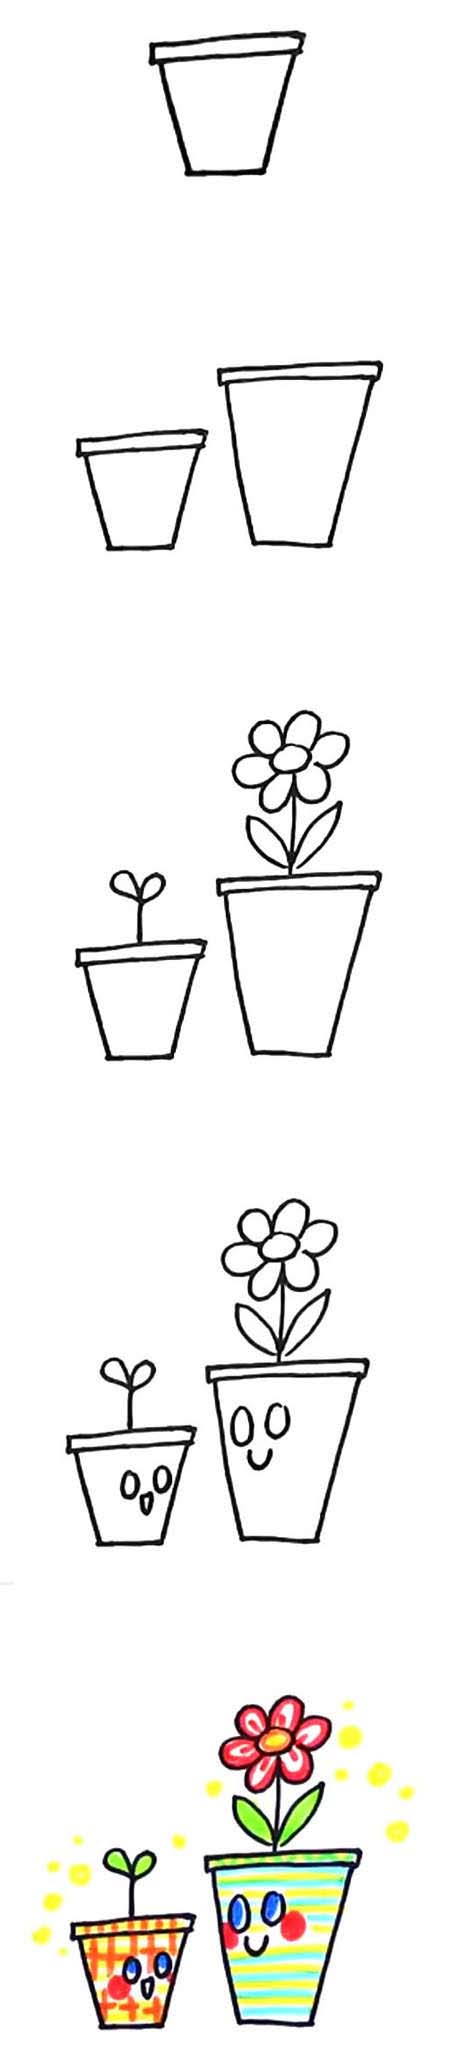 两盆可爱卡通小花的简笔画画法步骤教程简单好看涂颜色